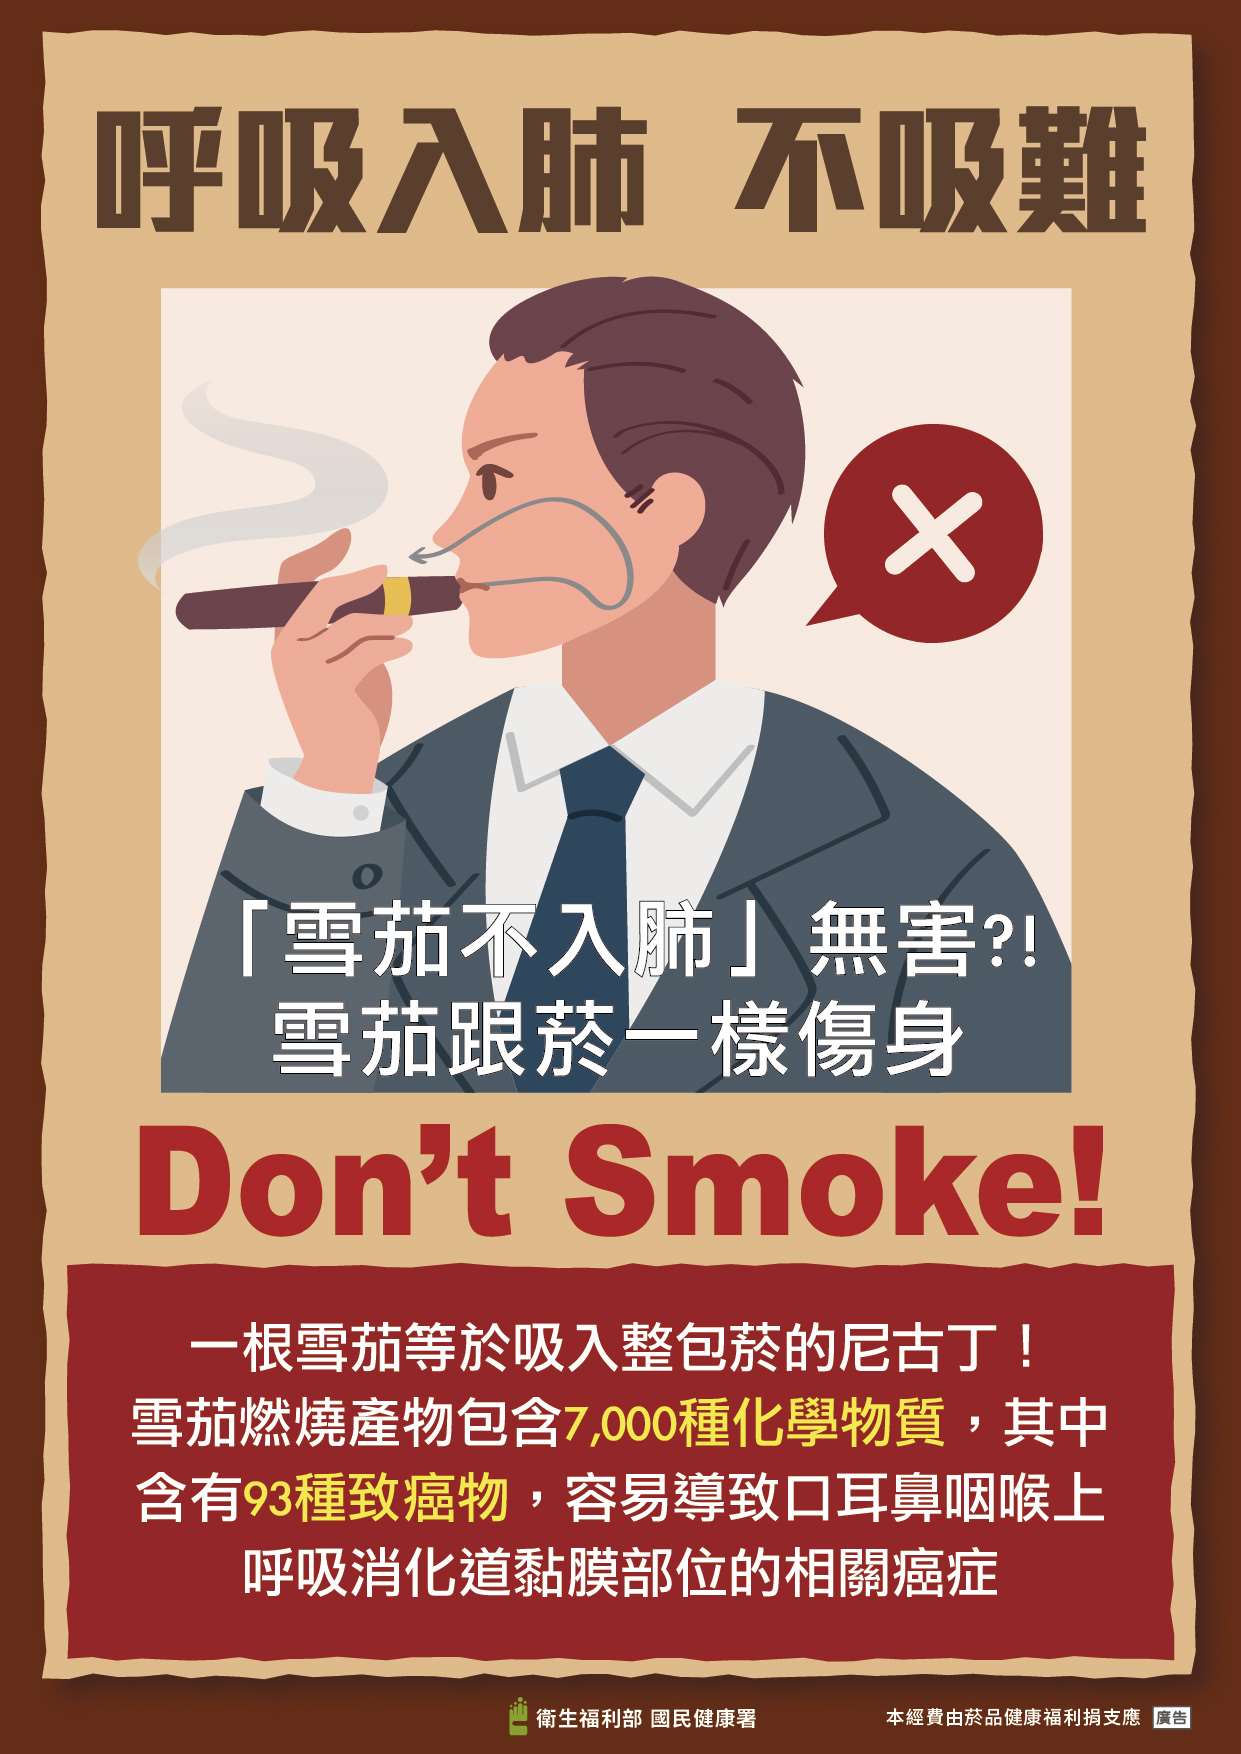 抽雪茄非吸菸的安全替代品